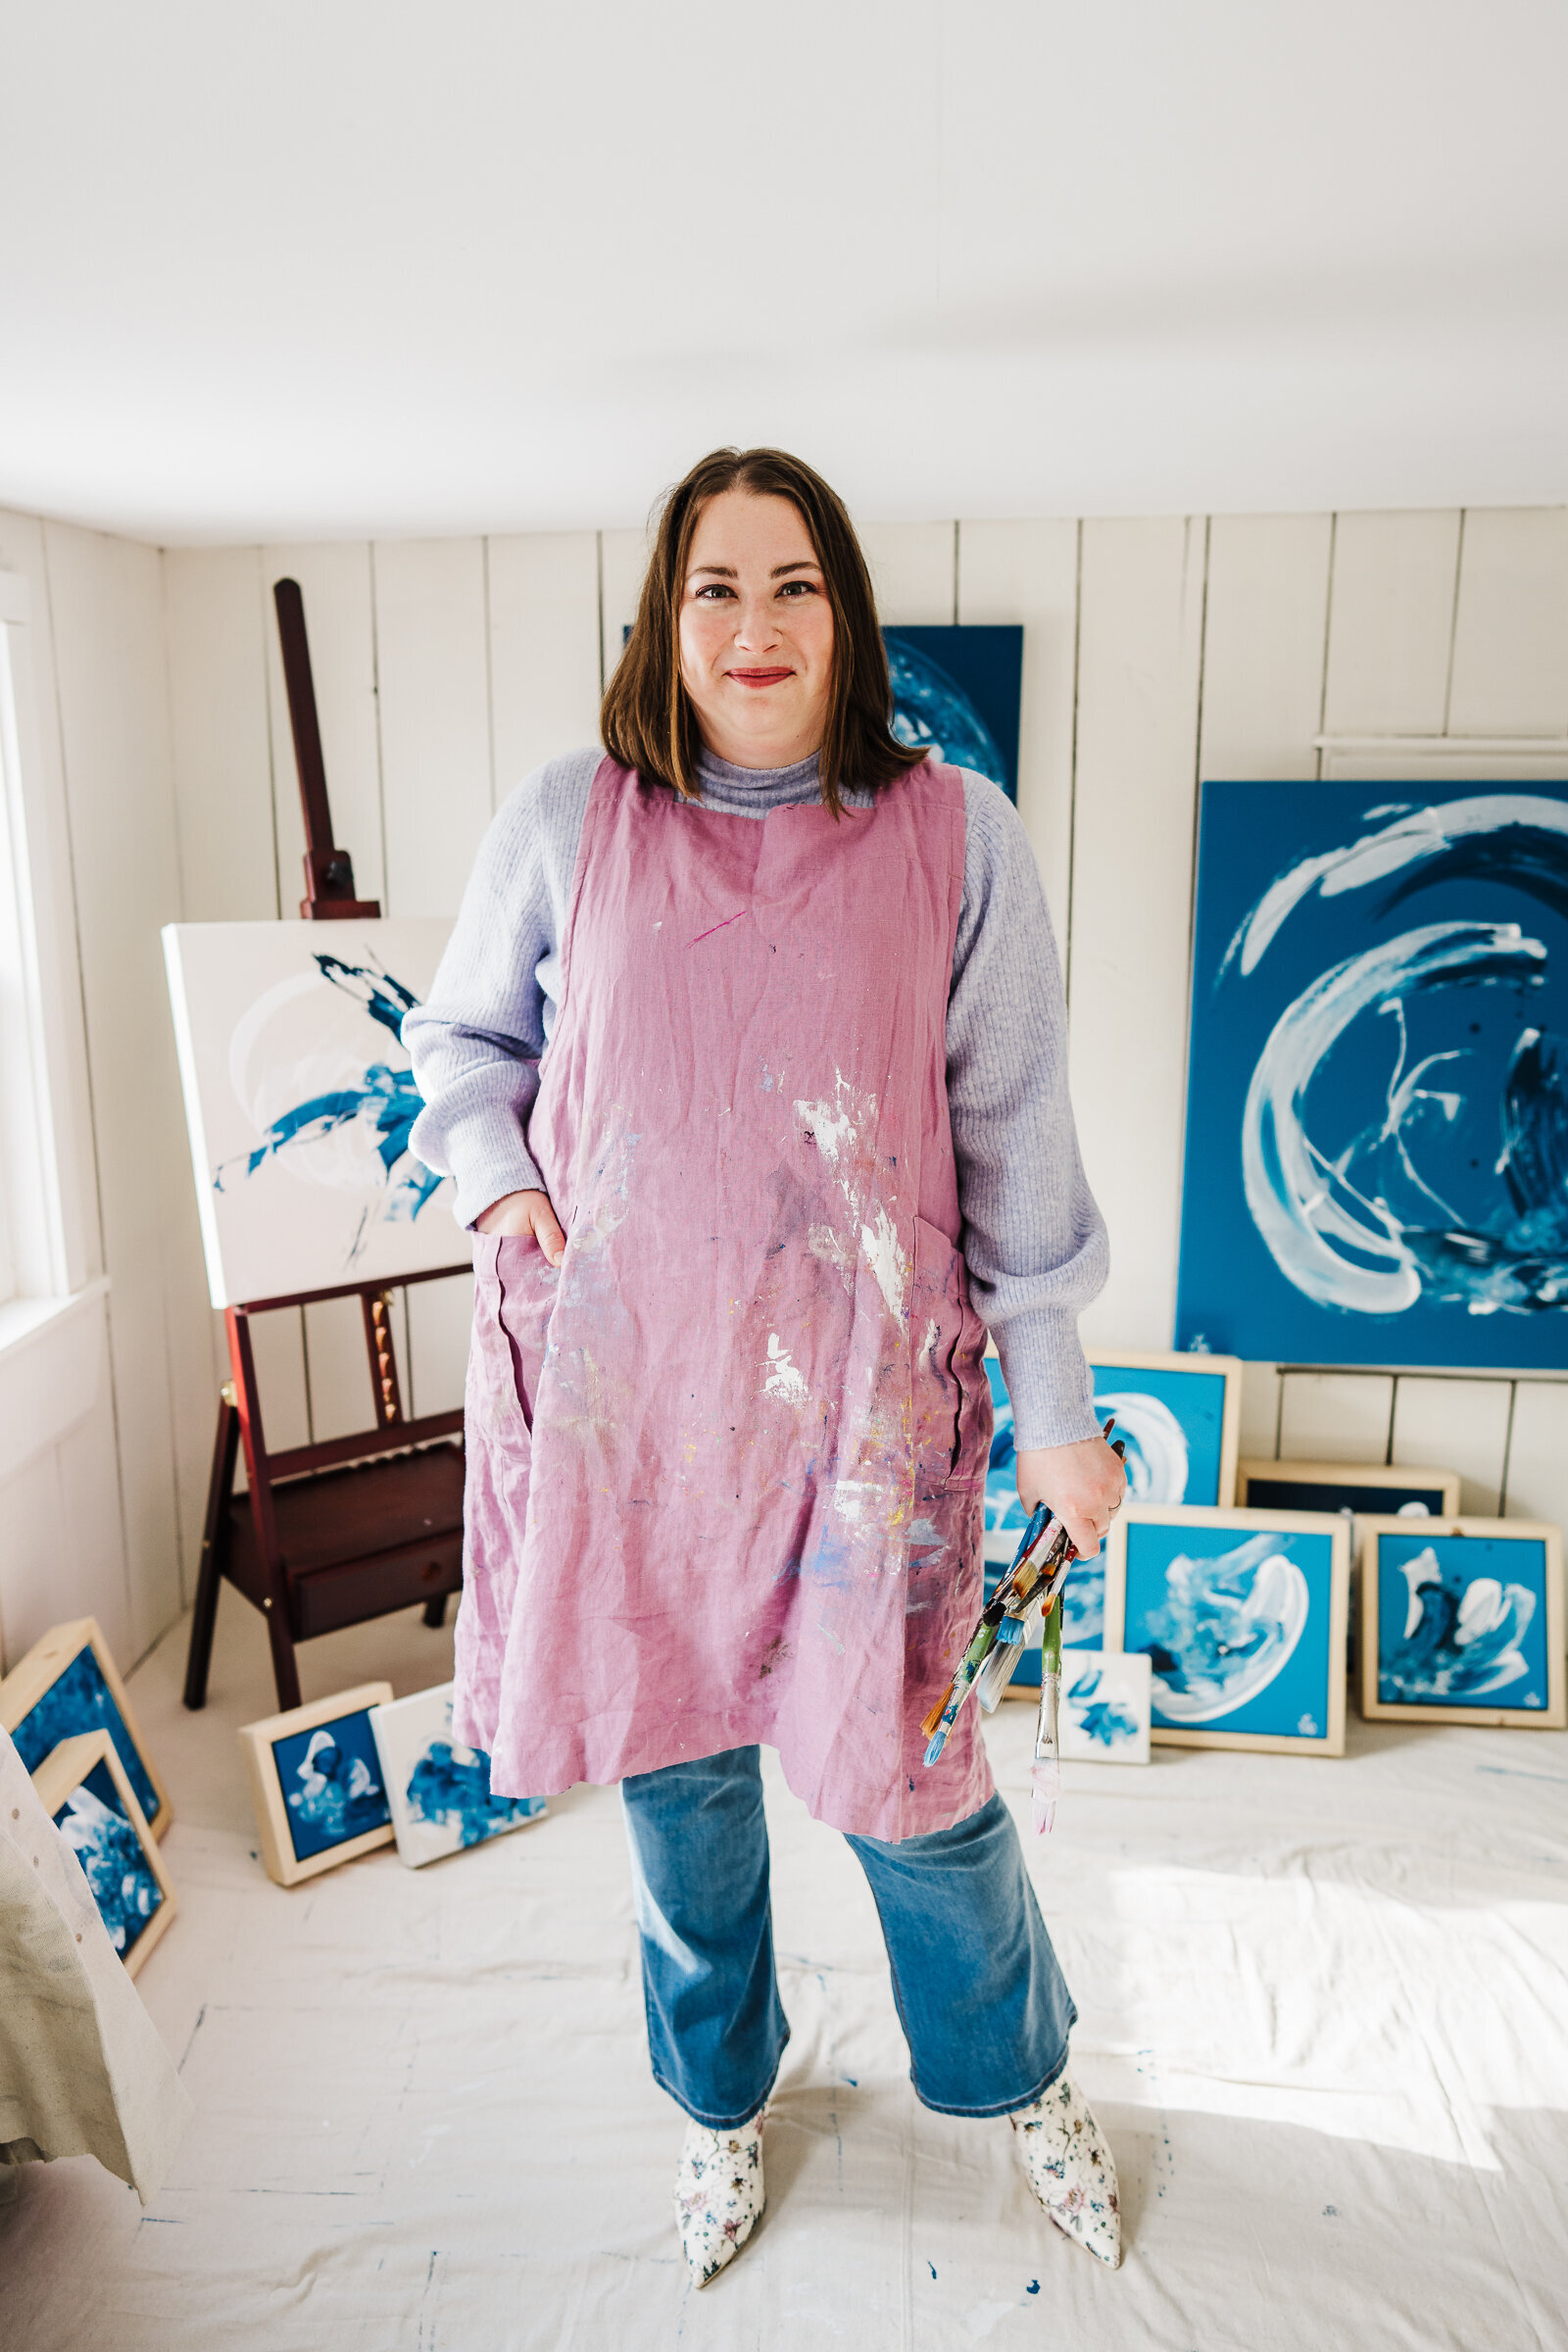 artist in pink smock paints in studio